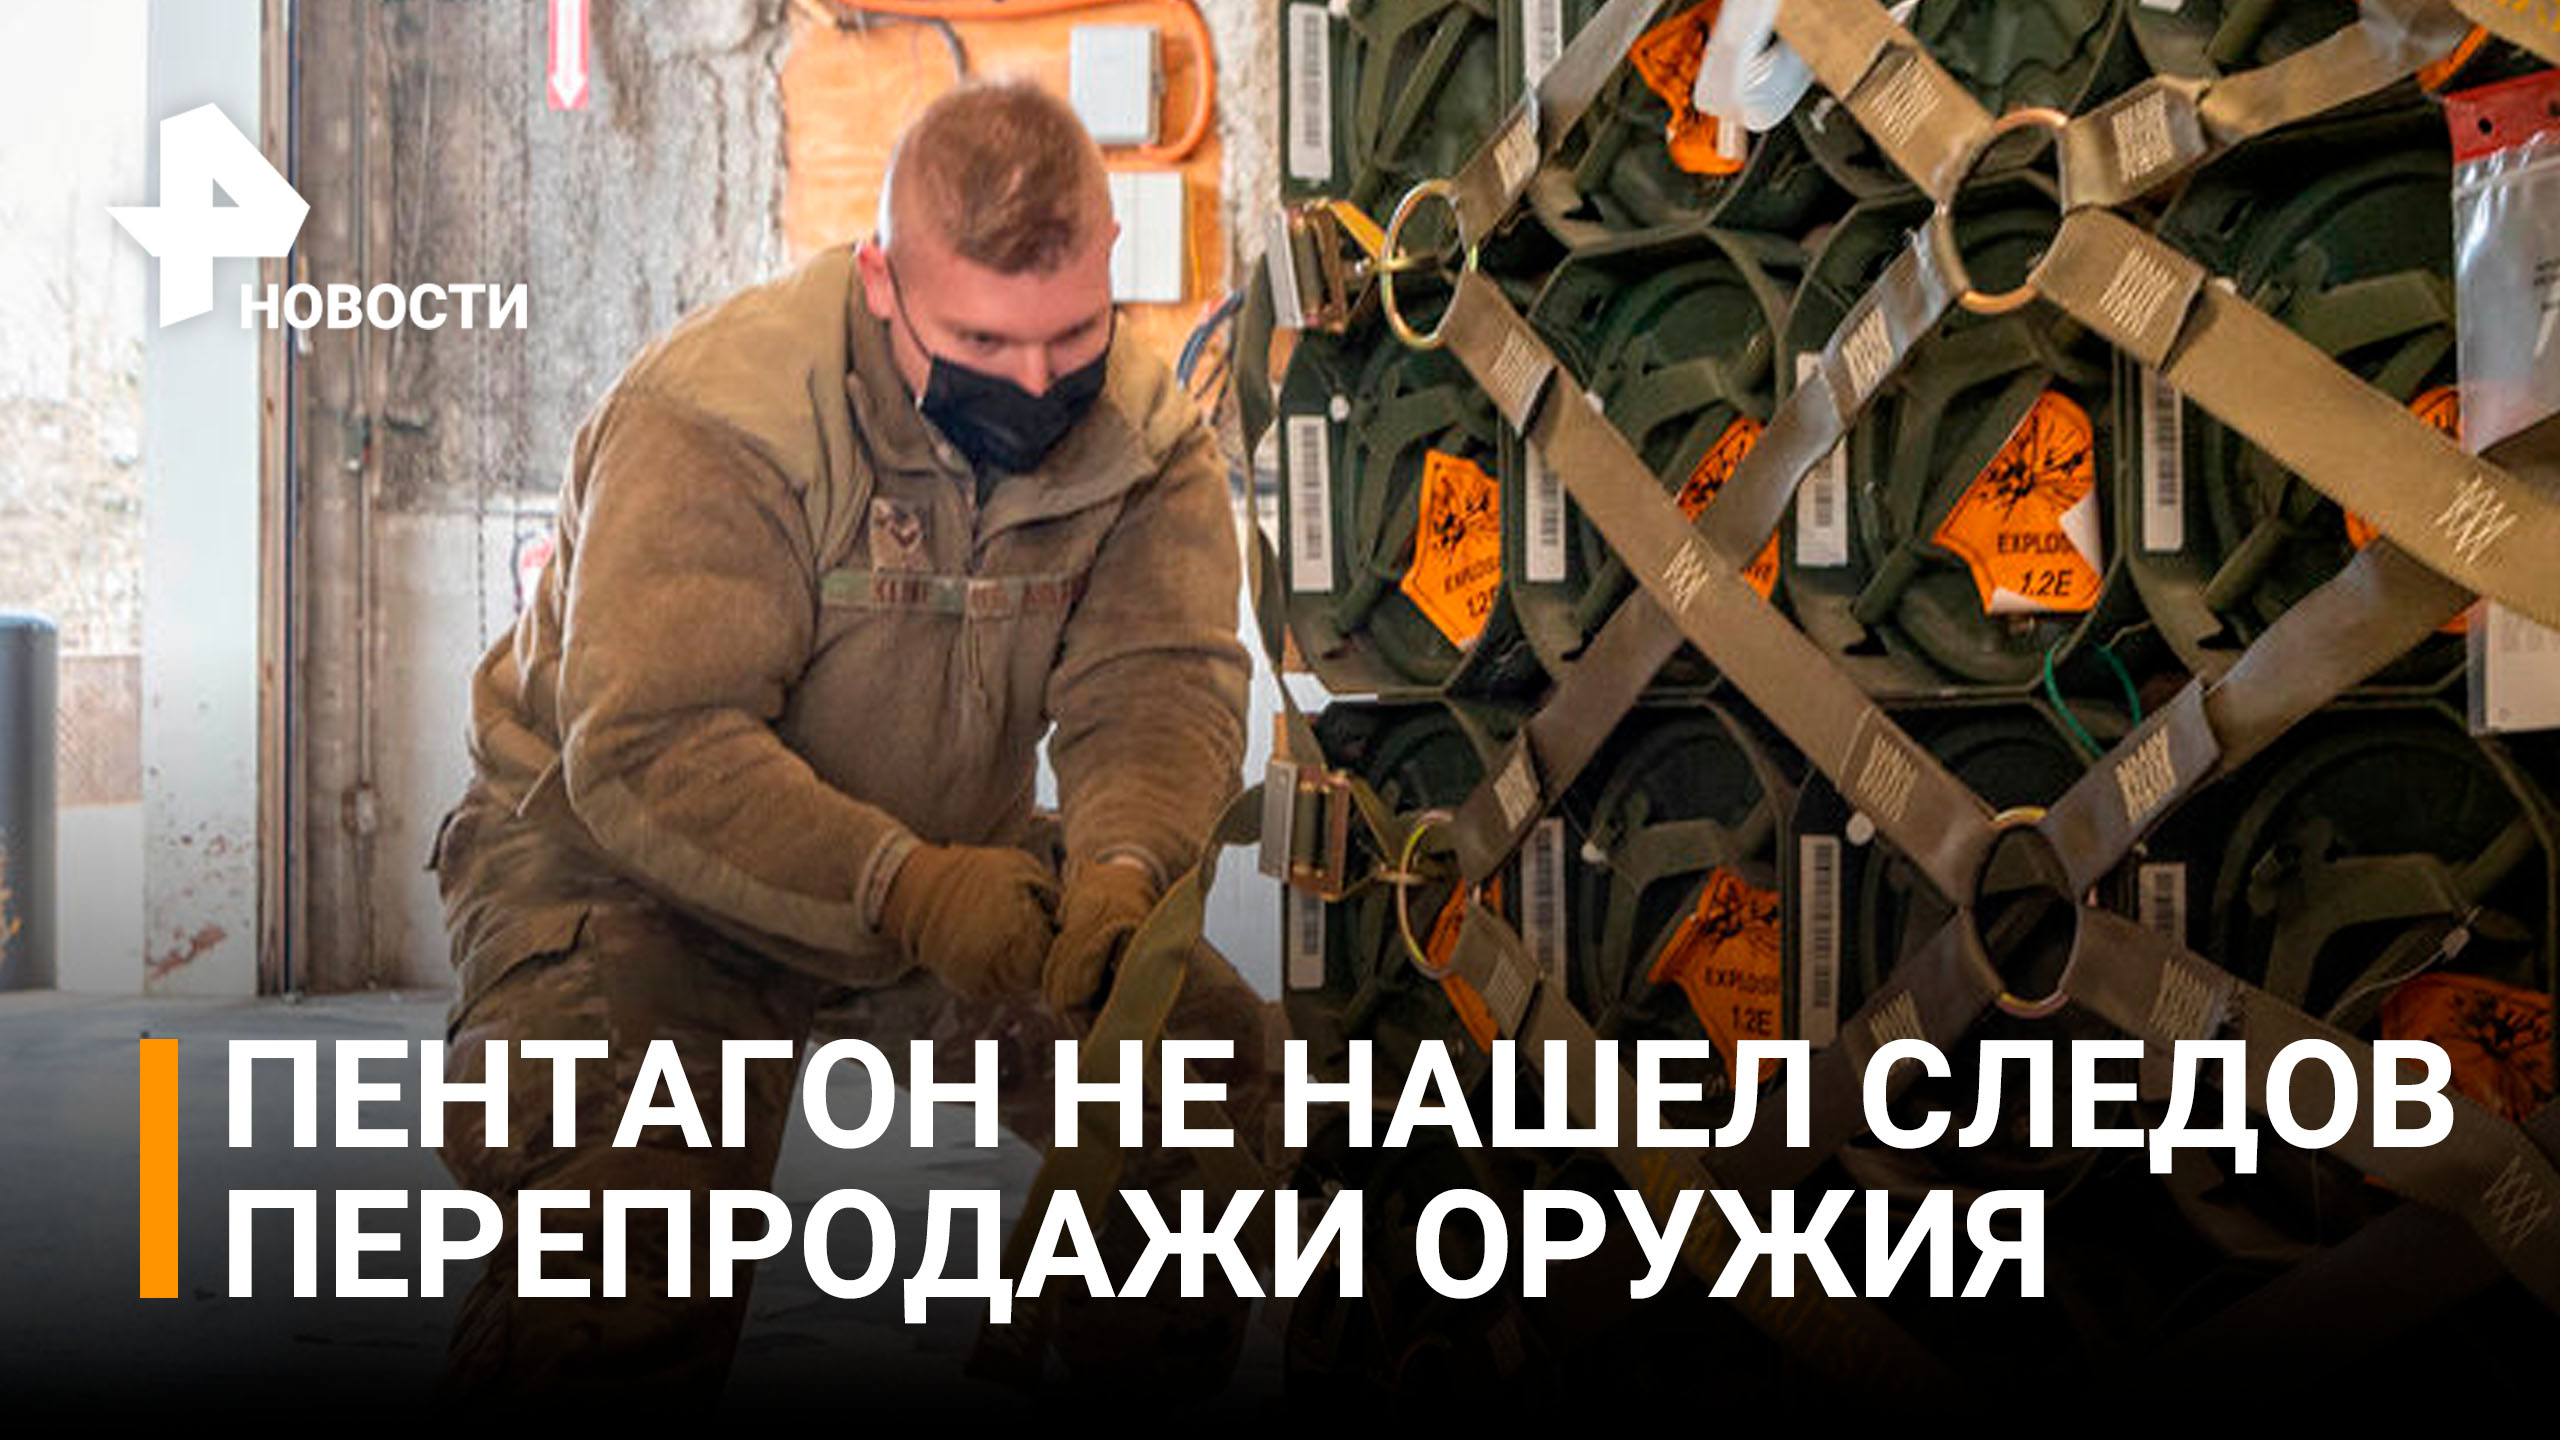 В Пентагоне не увидели признаков перепродажи Украиной оружия на черном рынке / РЕН Новости